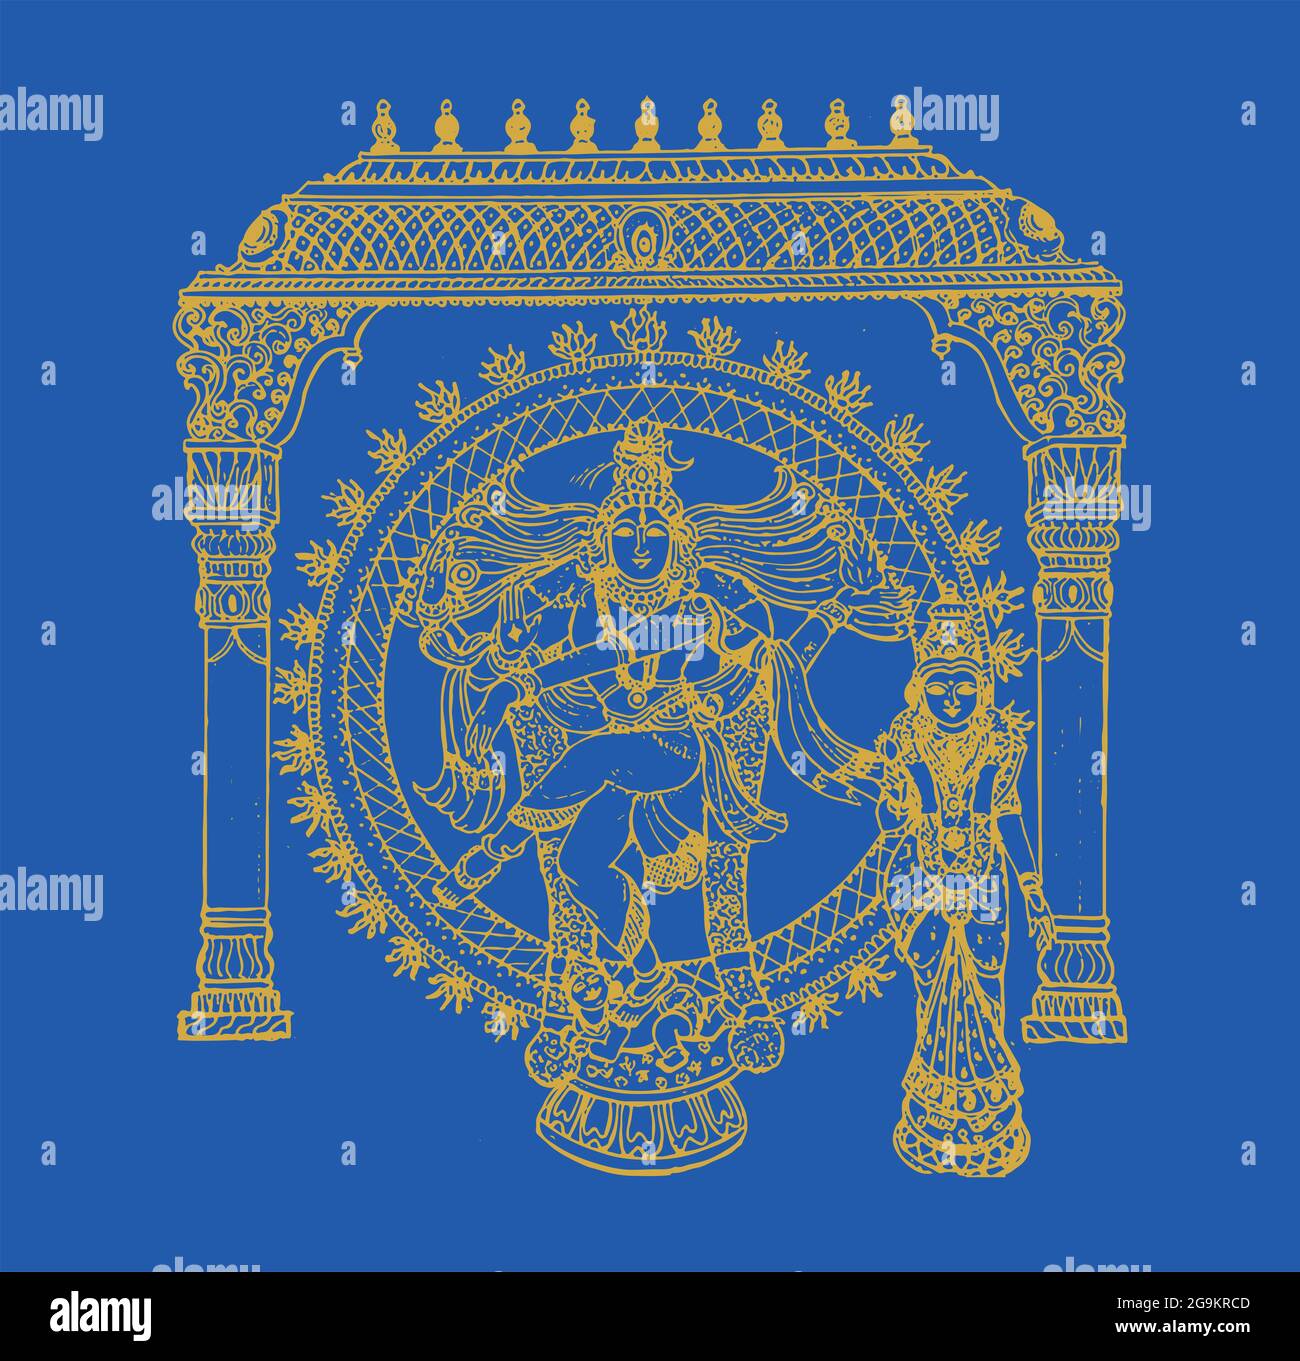 Schizzo del potente dio indiano Lord Shiva e dei suoi simboli con spazio libero per il testo Foto Stock